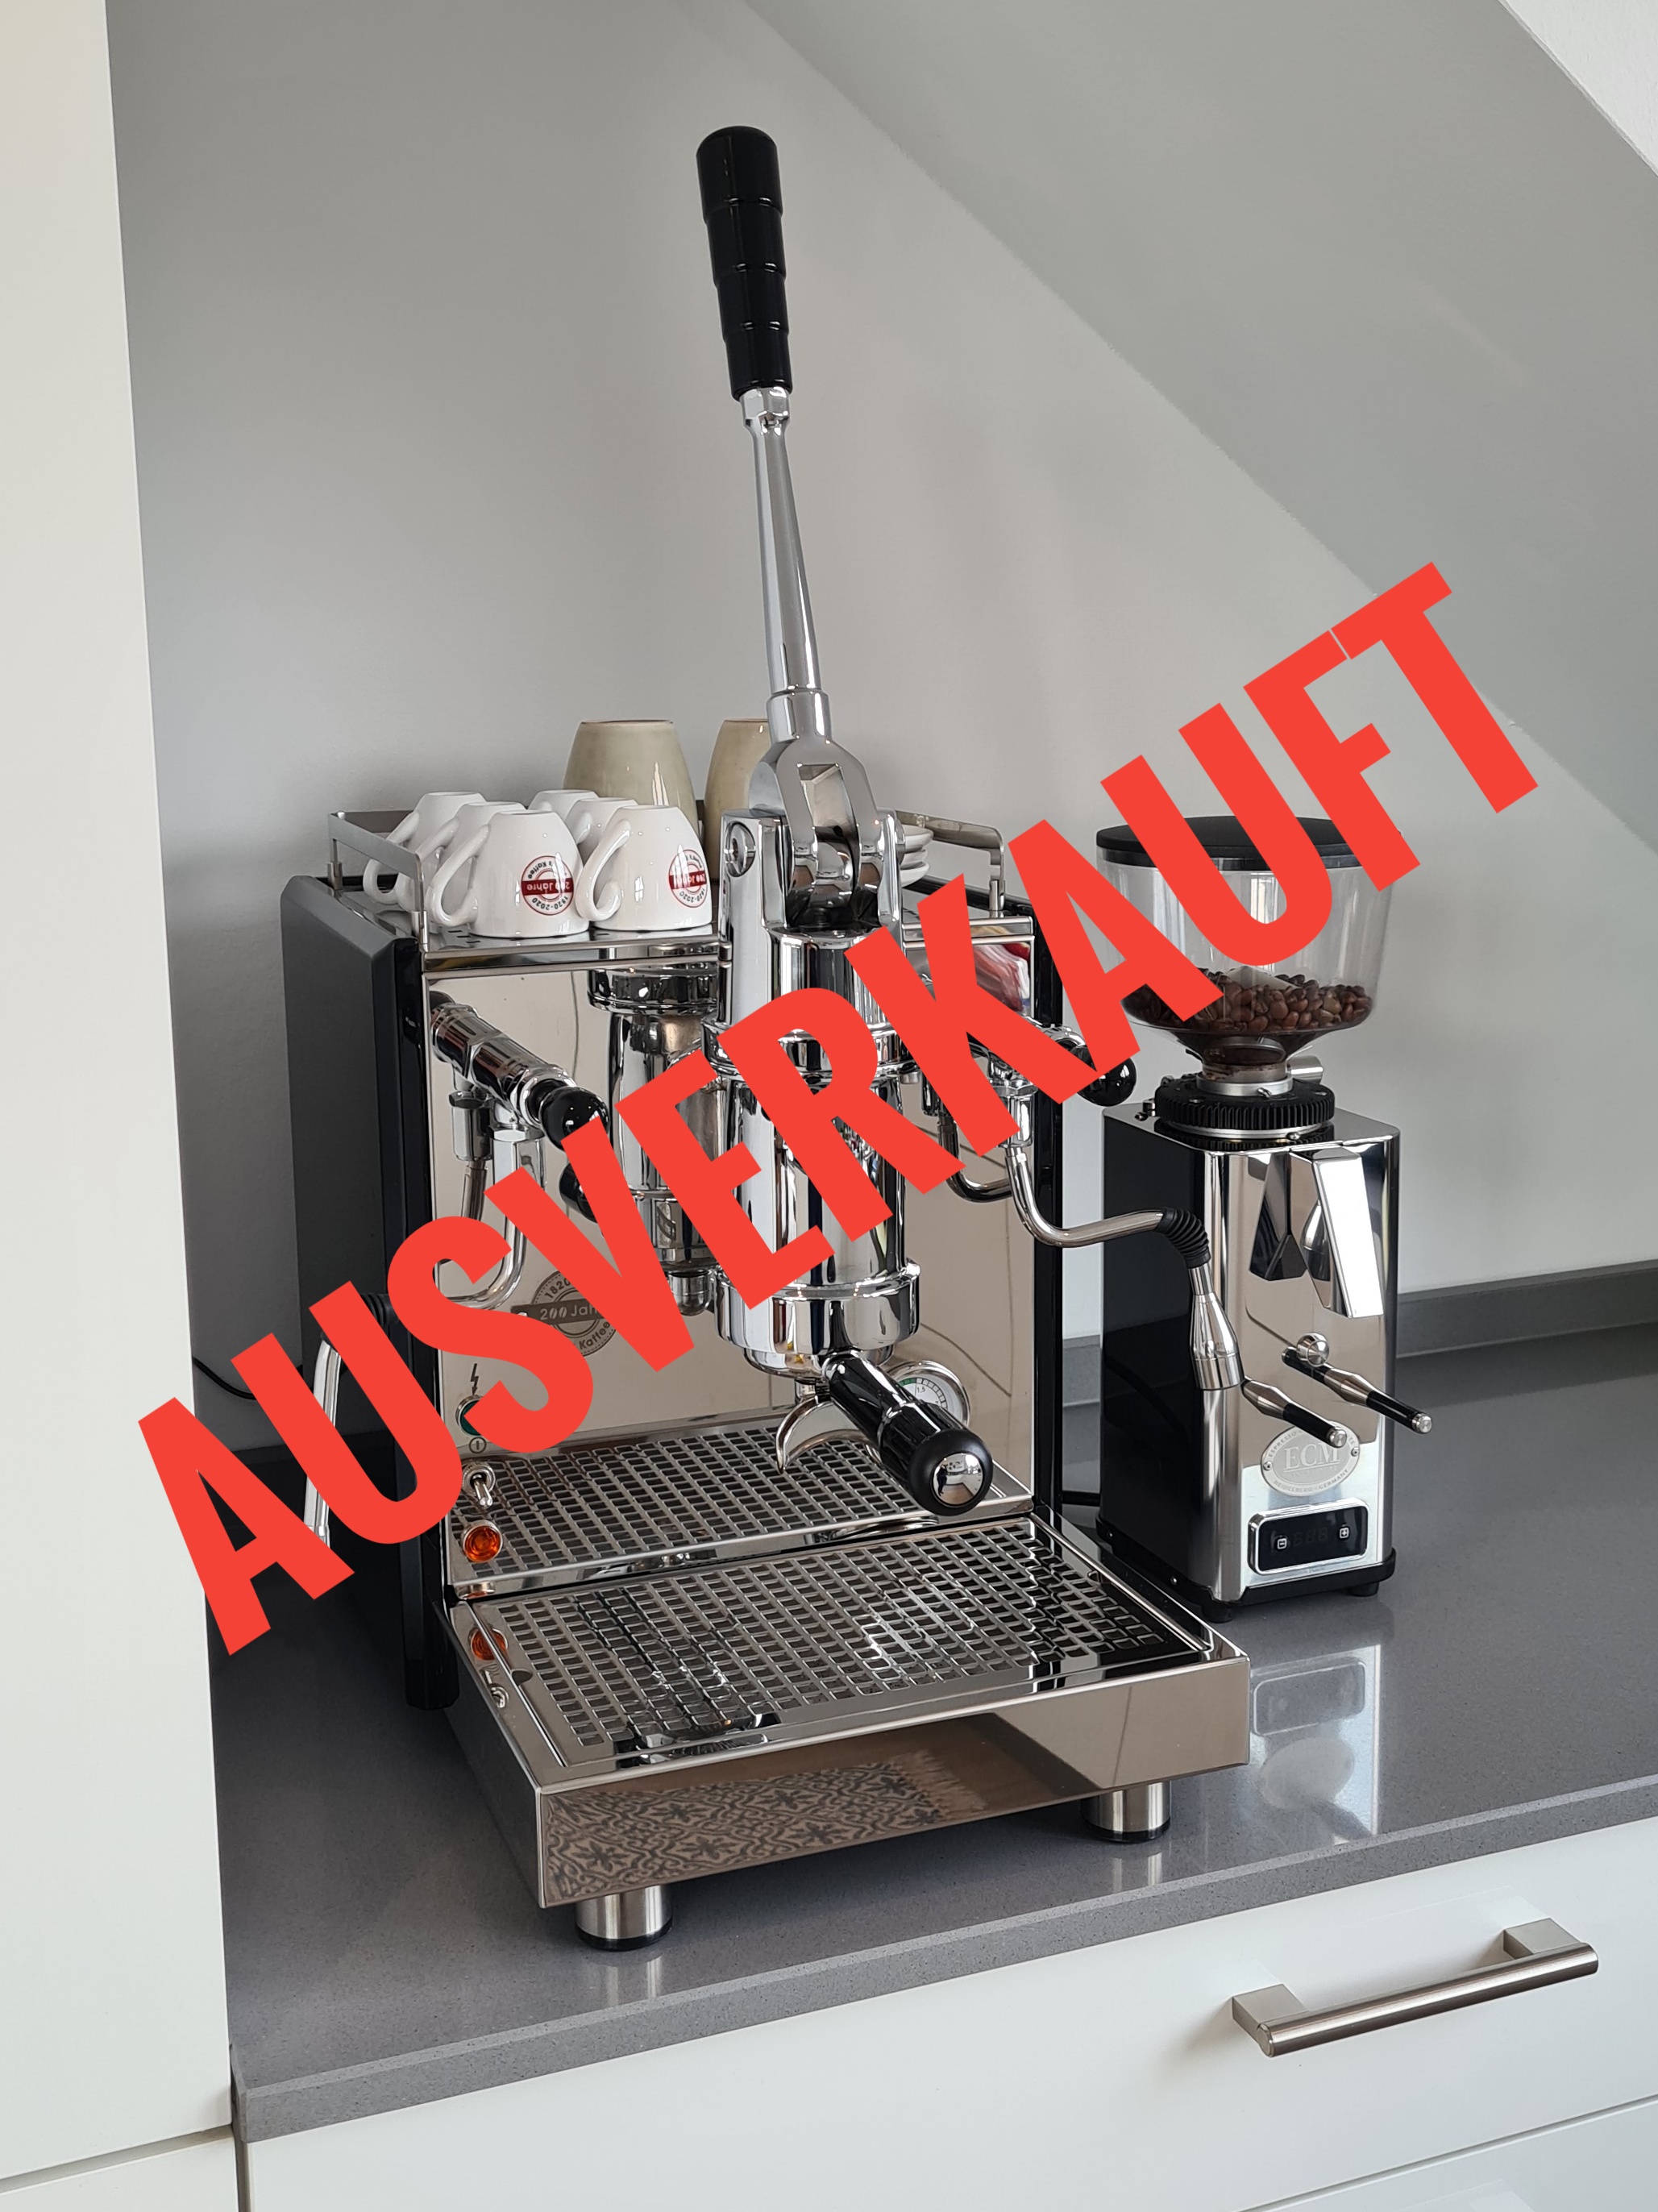 Profitec Pro 800 Lever Espresso Machine